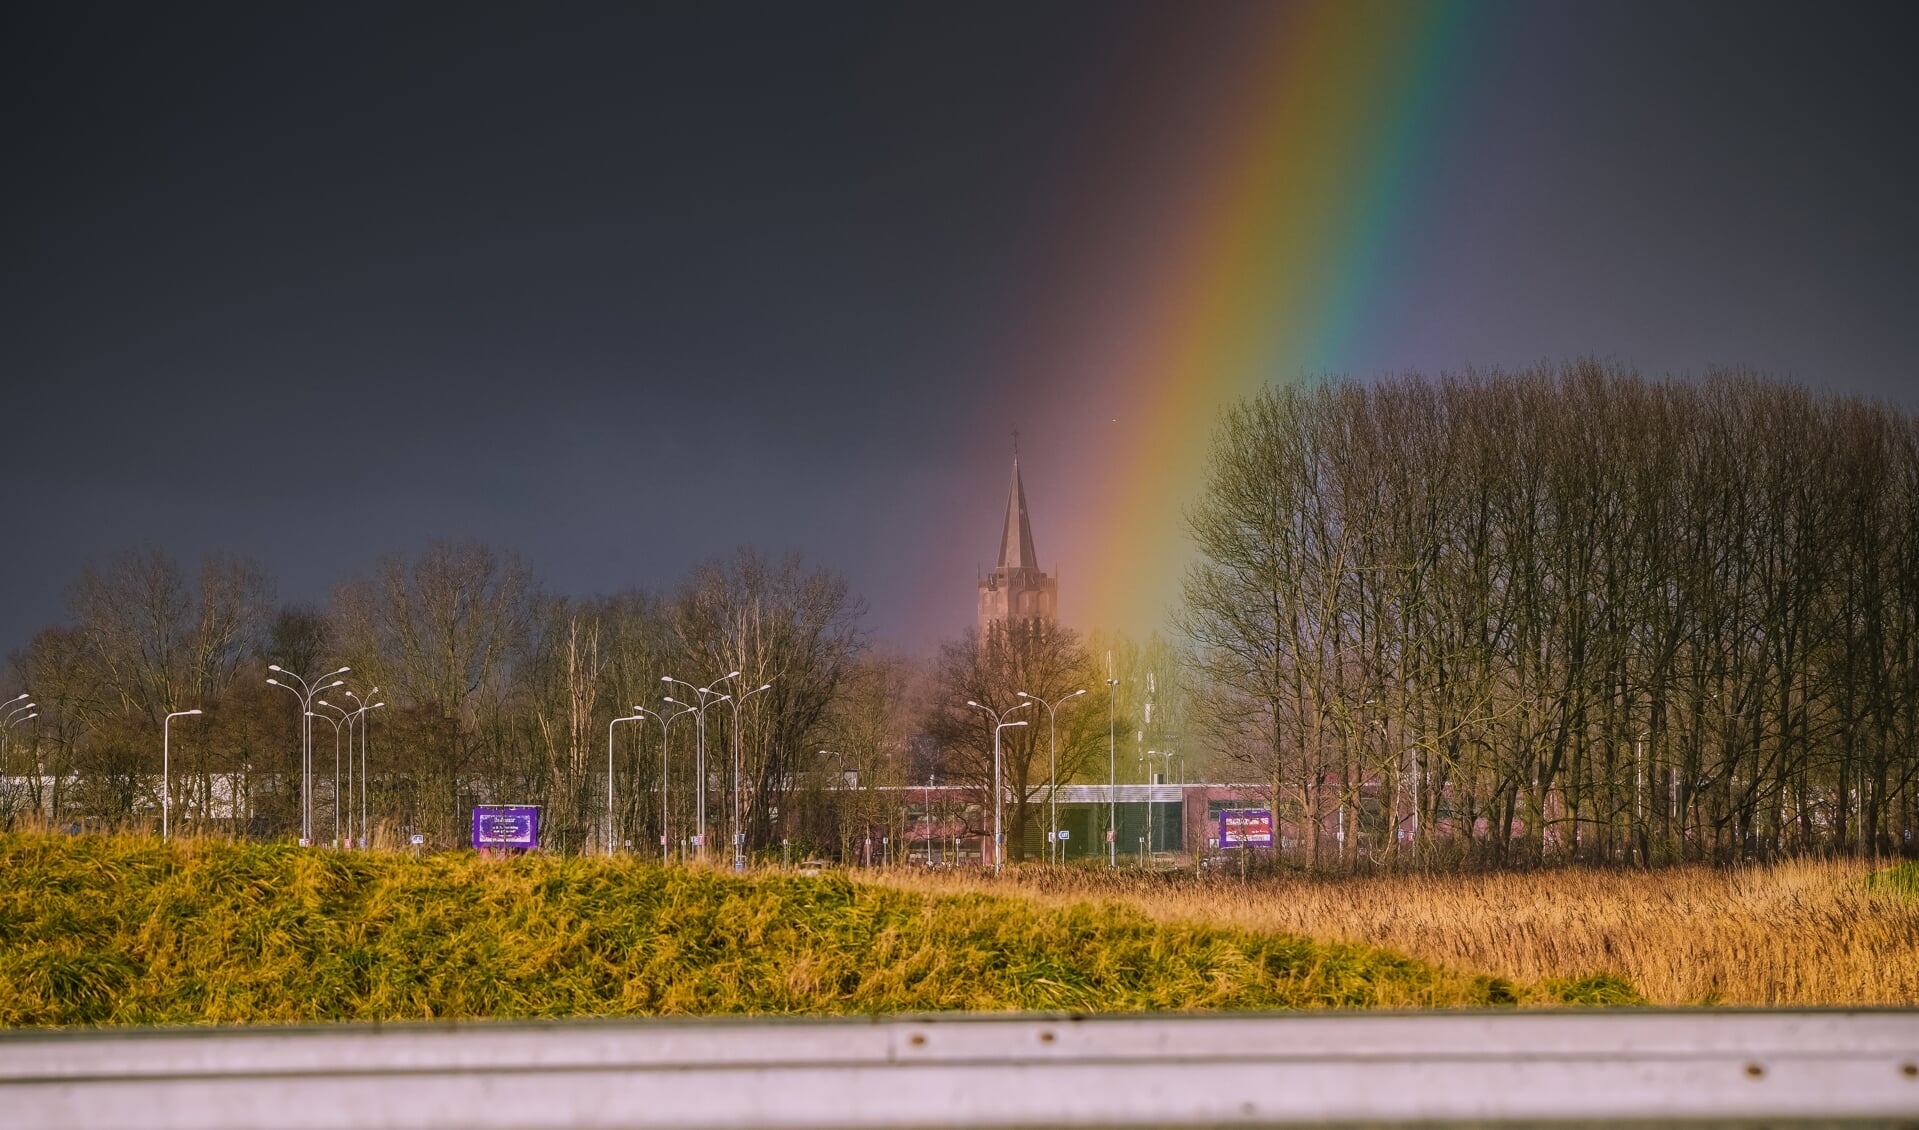 De regenboog zet de Wijkertoren 'in de spotlights'.